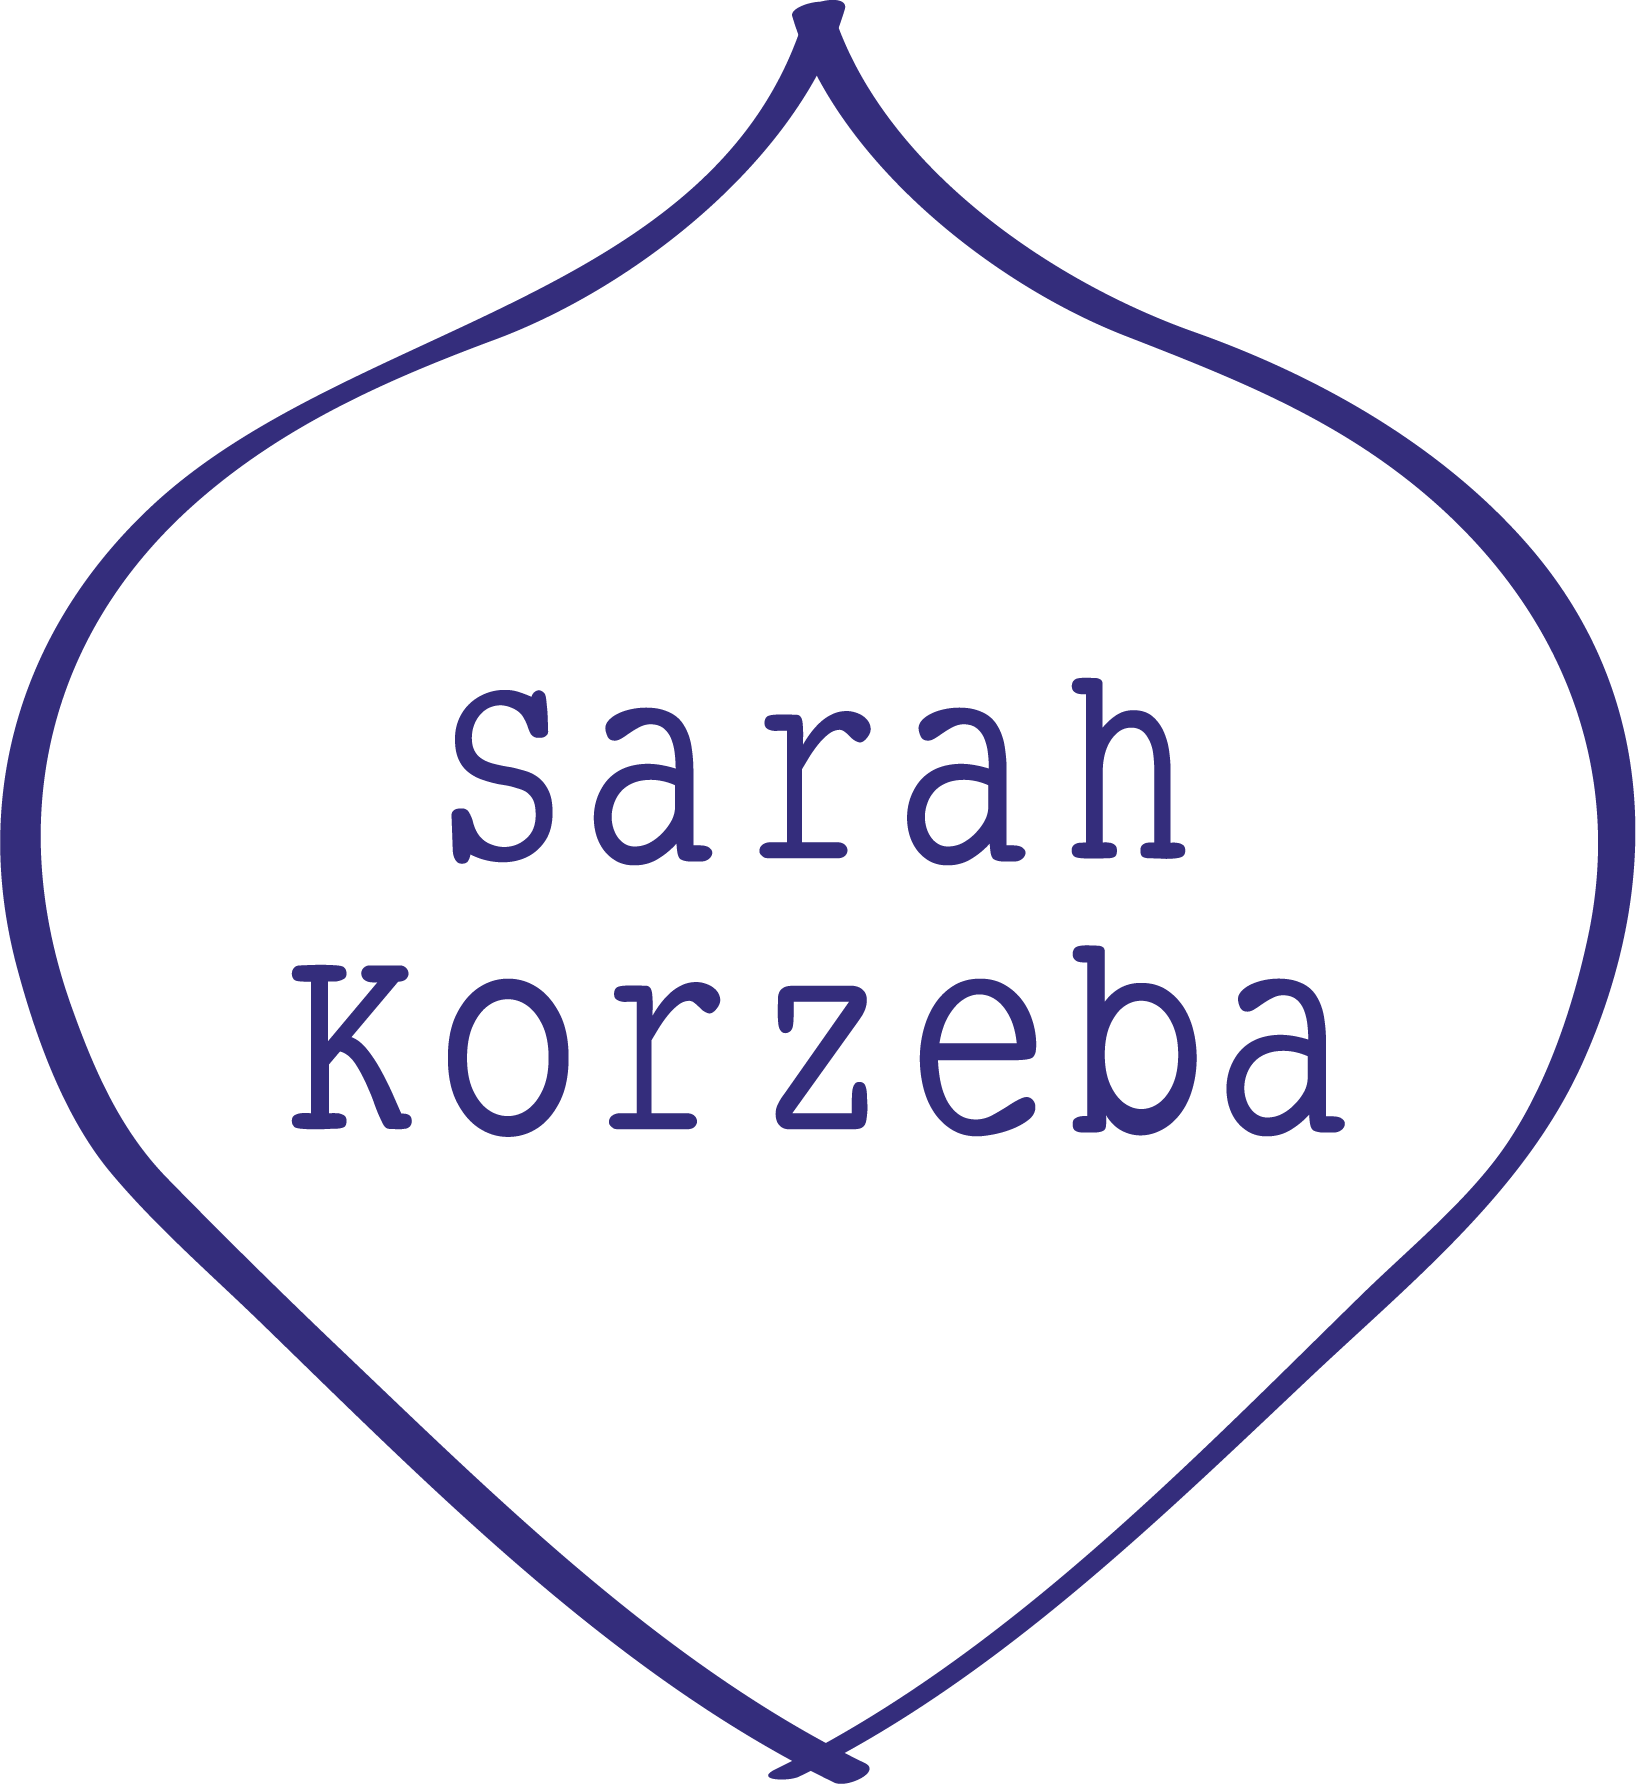 Sarah Korzeba